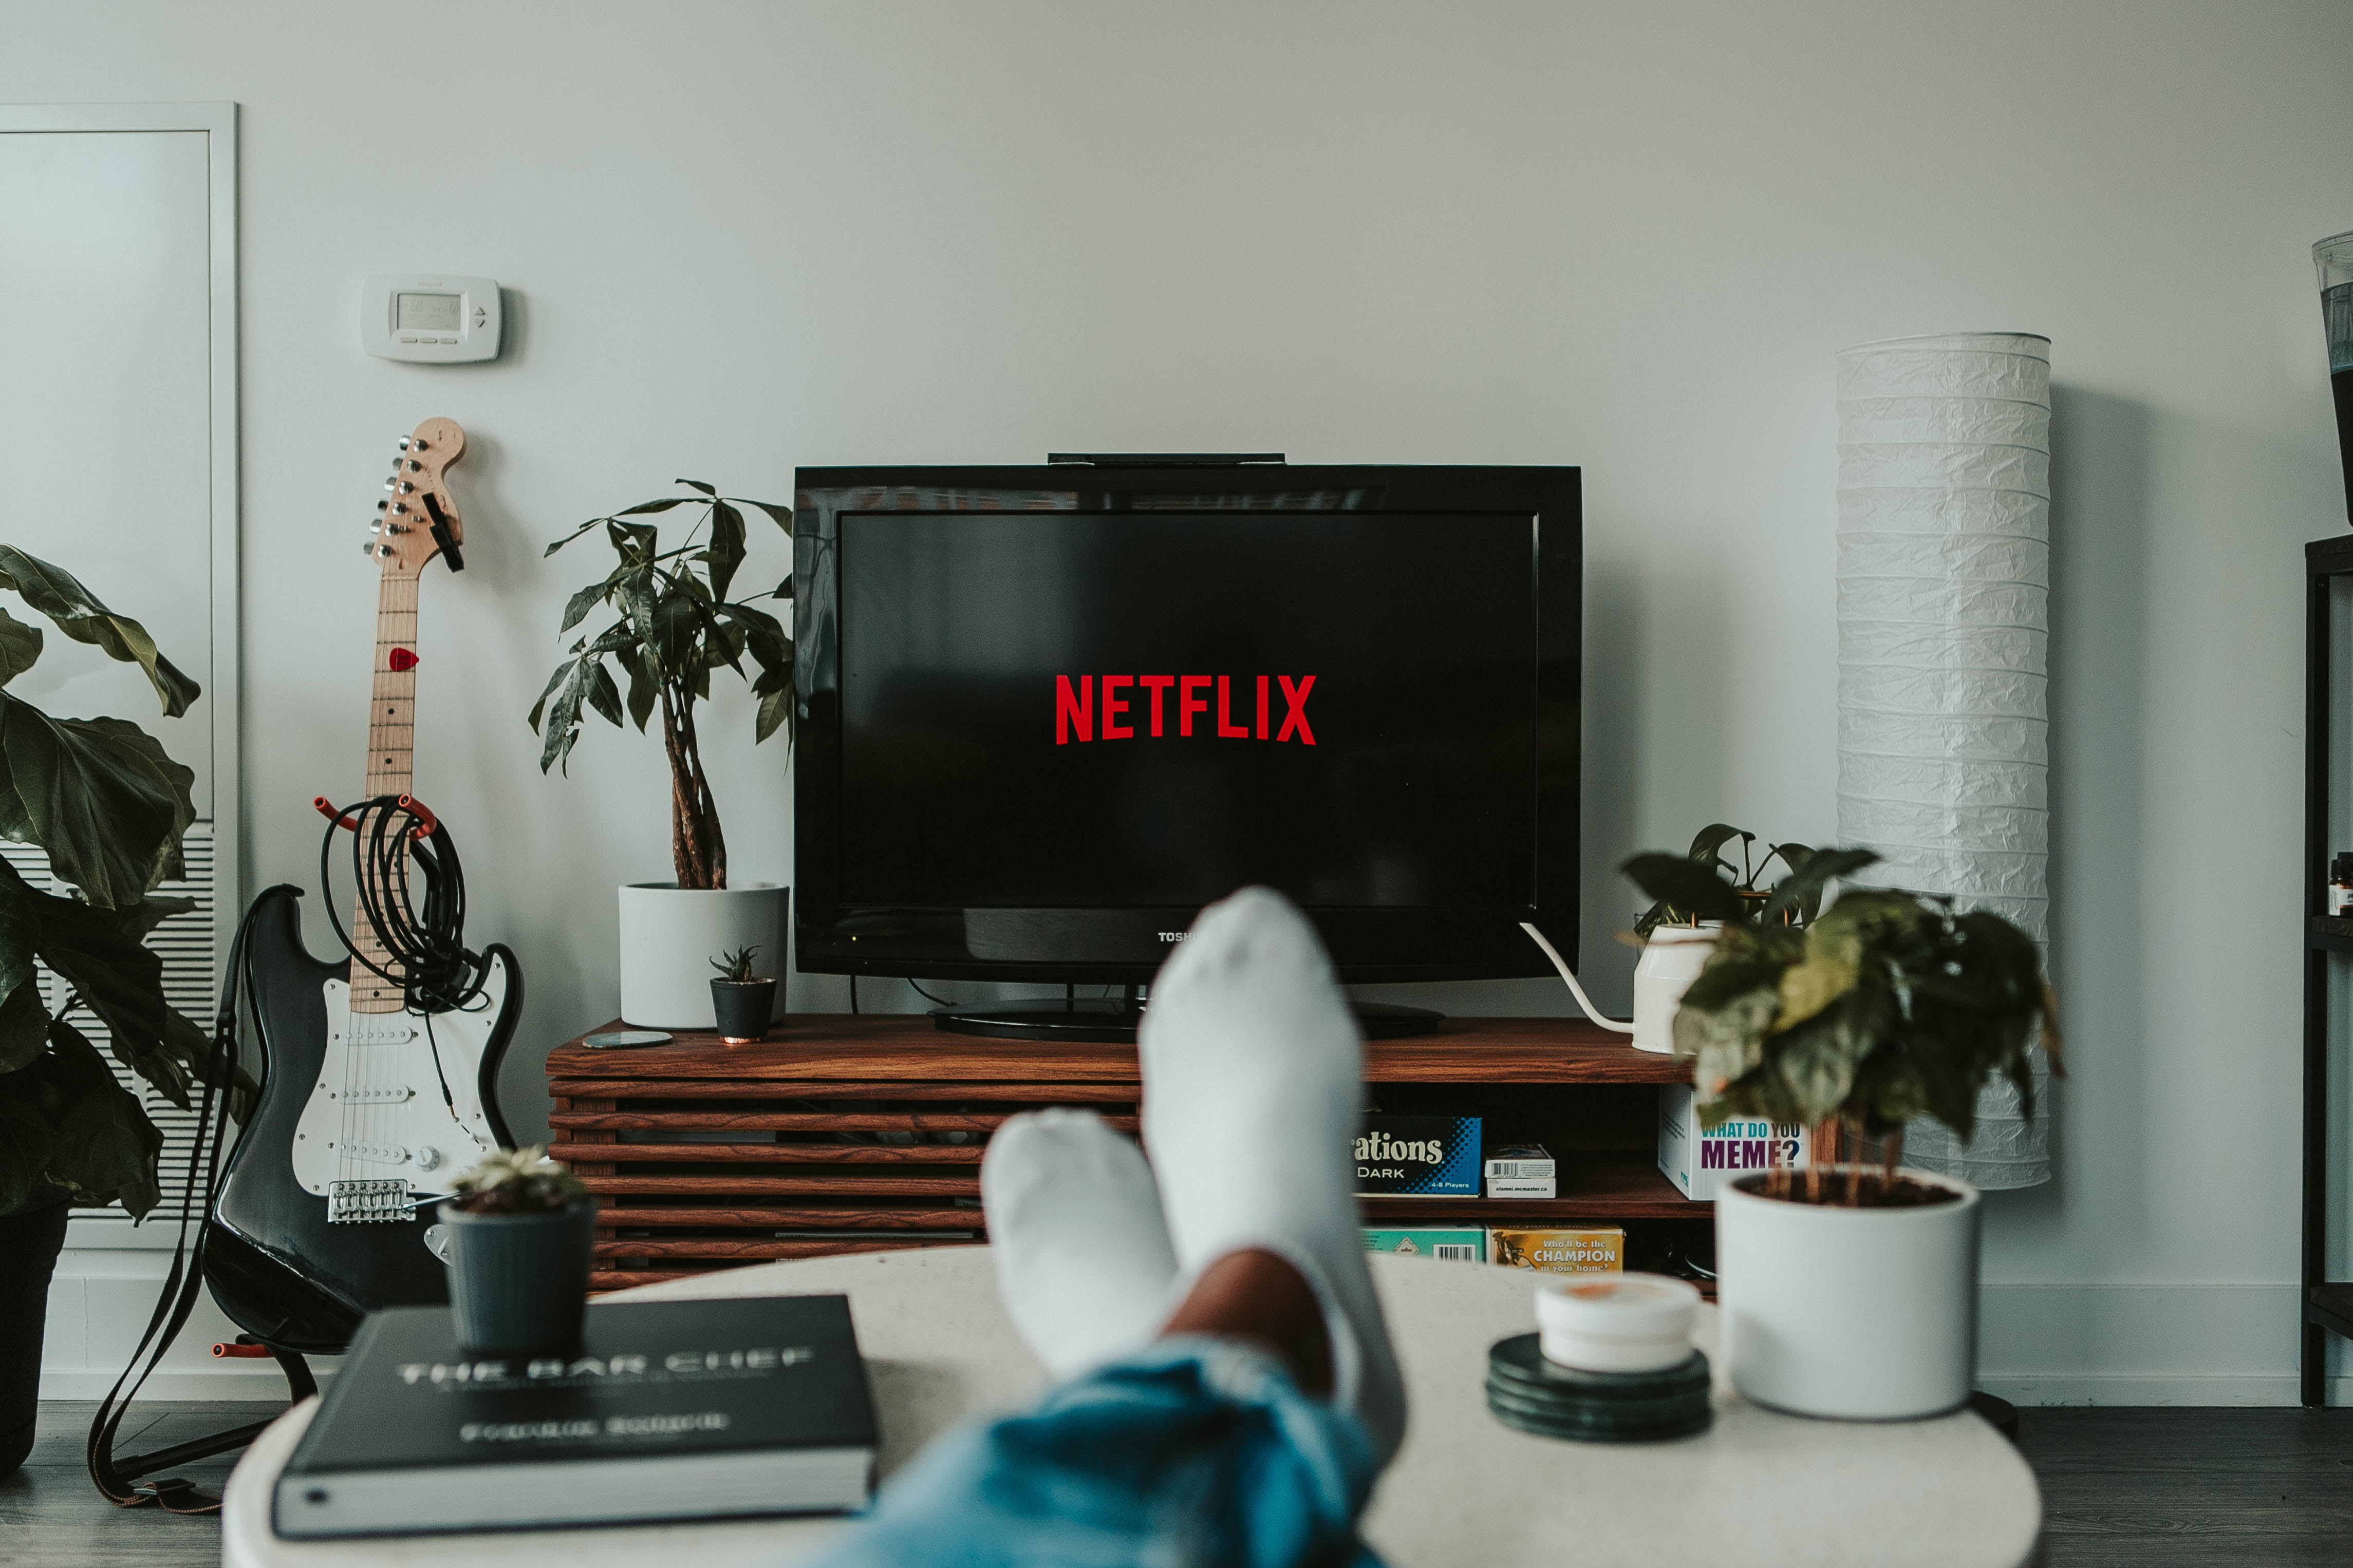 Melhores Planos Vivo Combo, Fibra, TV + Netflix